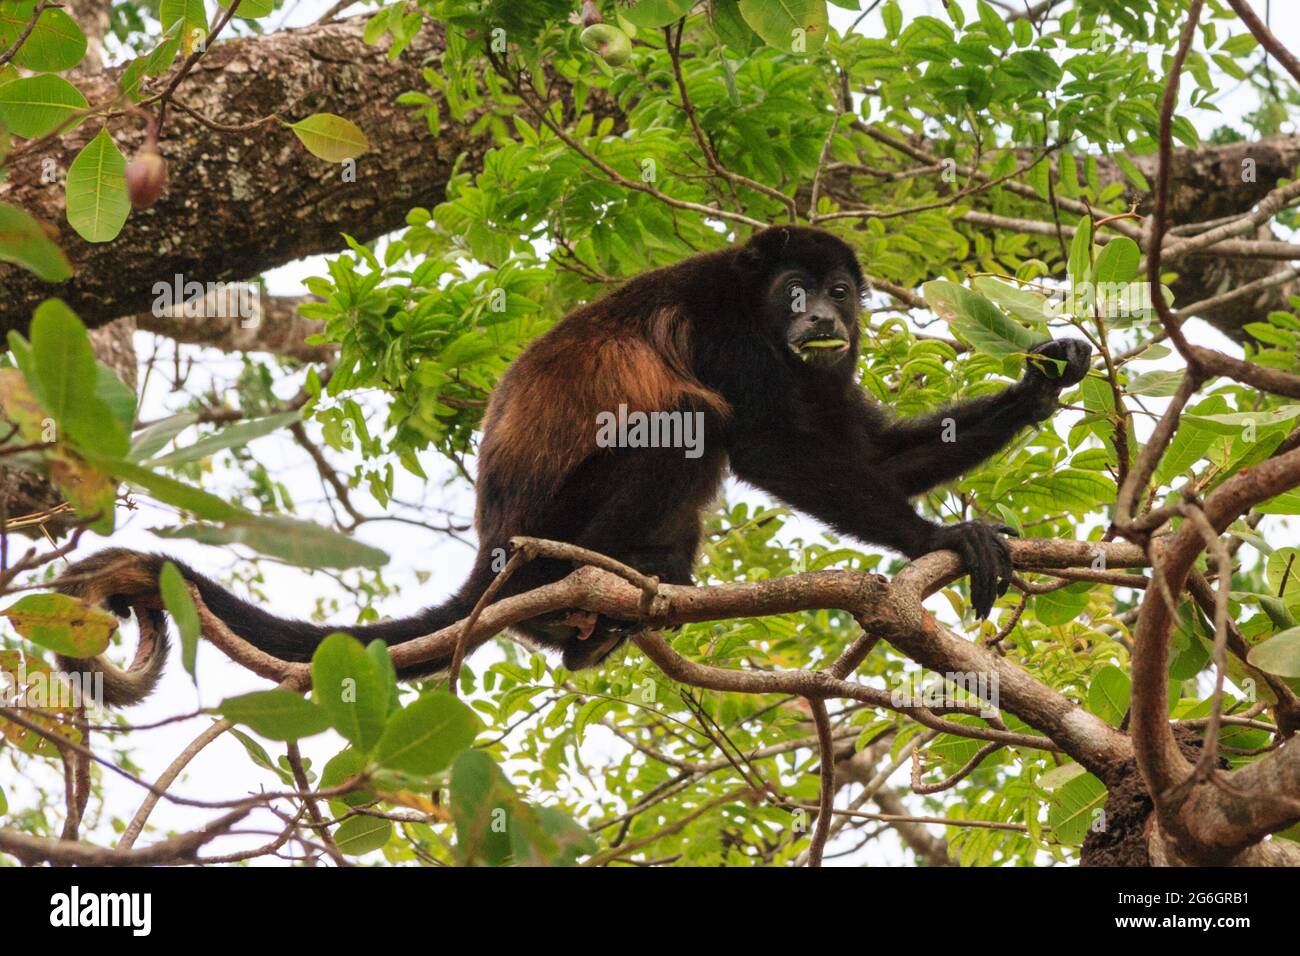 Singe mangé de Howler (Alouatta palliata) dans la forêt tropicale, Costa Rica, Amérique centrale Banque D'Images